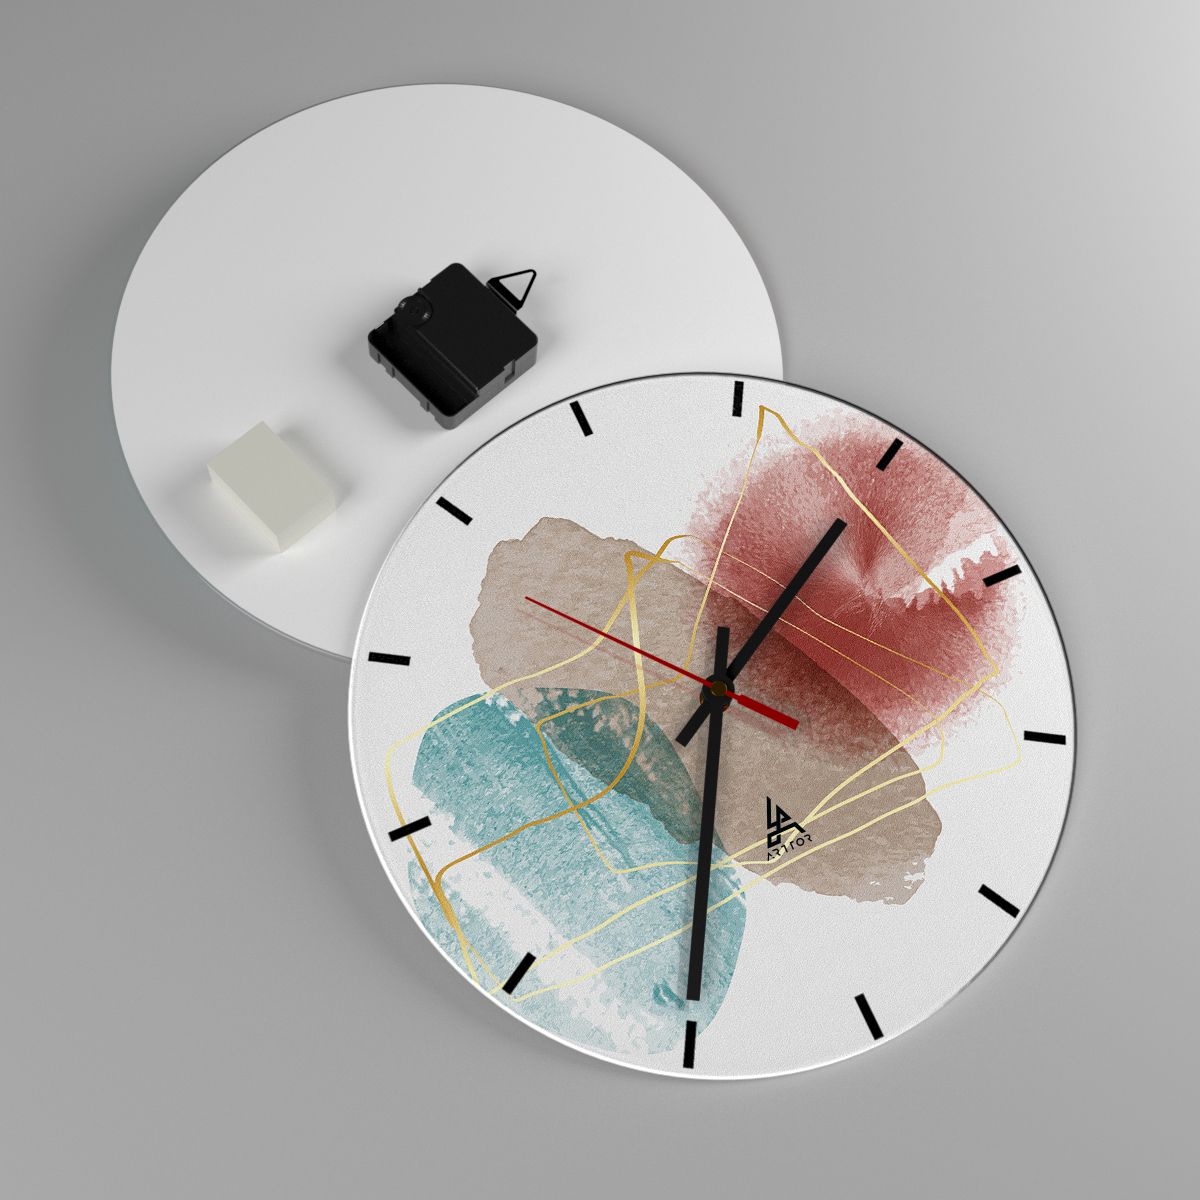 Reloj de pared Abstracción, Reloj de pared Arte, Reloj de pared Patrón Moderno, Reloj de pared Diseño, Reloj de pared Arte Moderno.